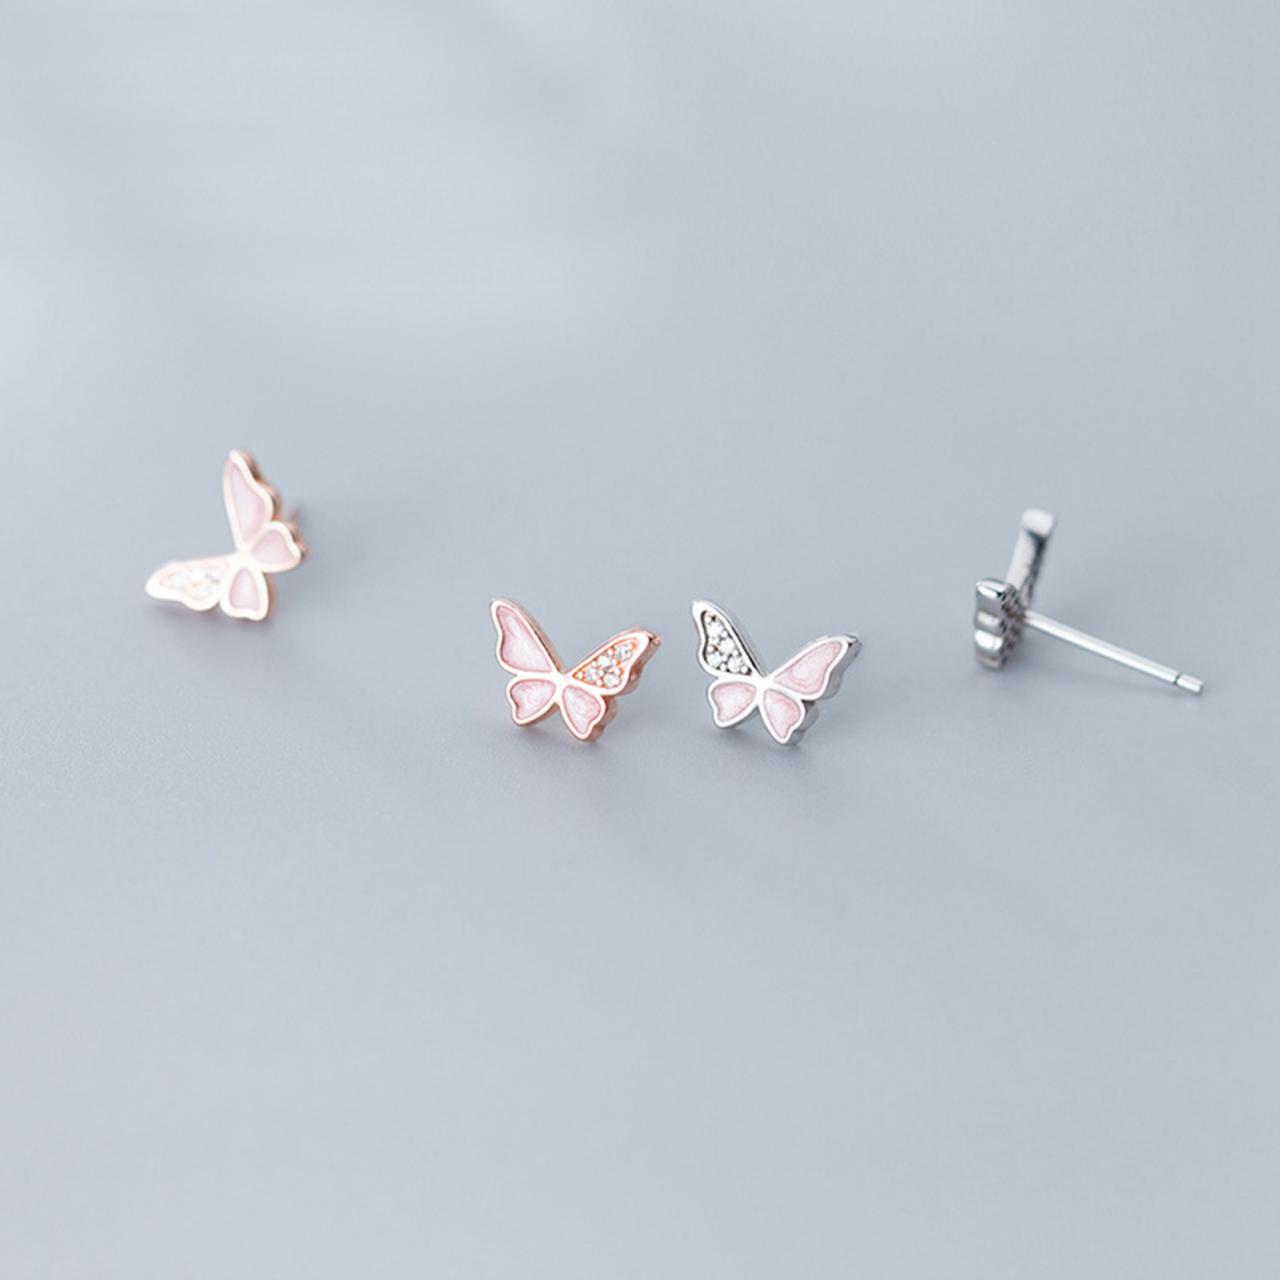 Cz Pave Butterfly Ear Studs, S925 Silver Butterfly Post Earrings, Women Animals Earrings, Everyday Earrings, Butterfly Ear Post